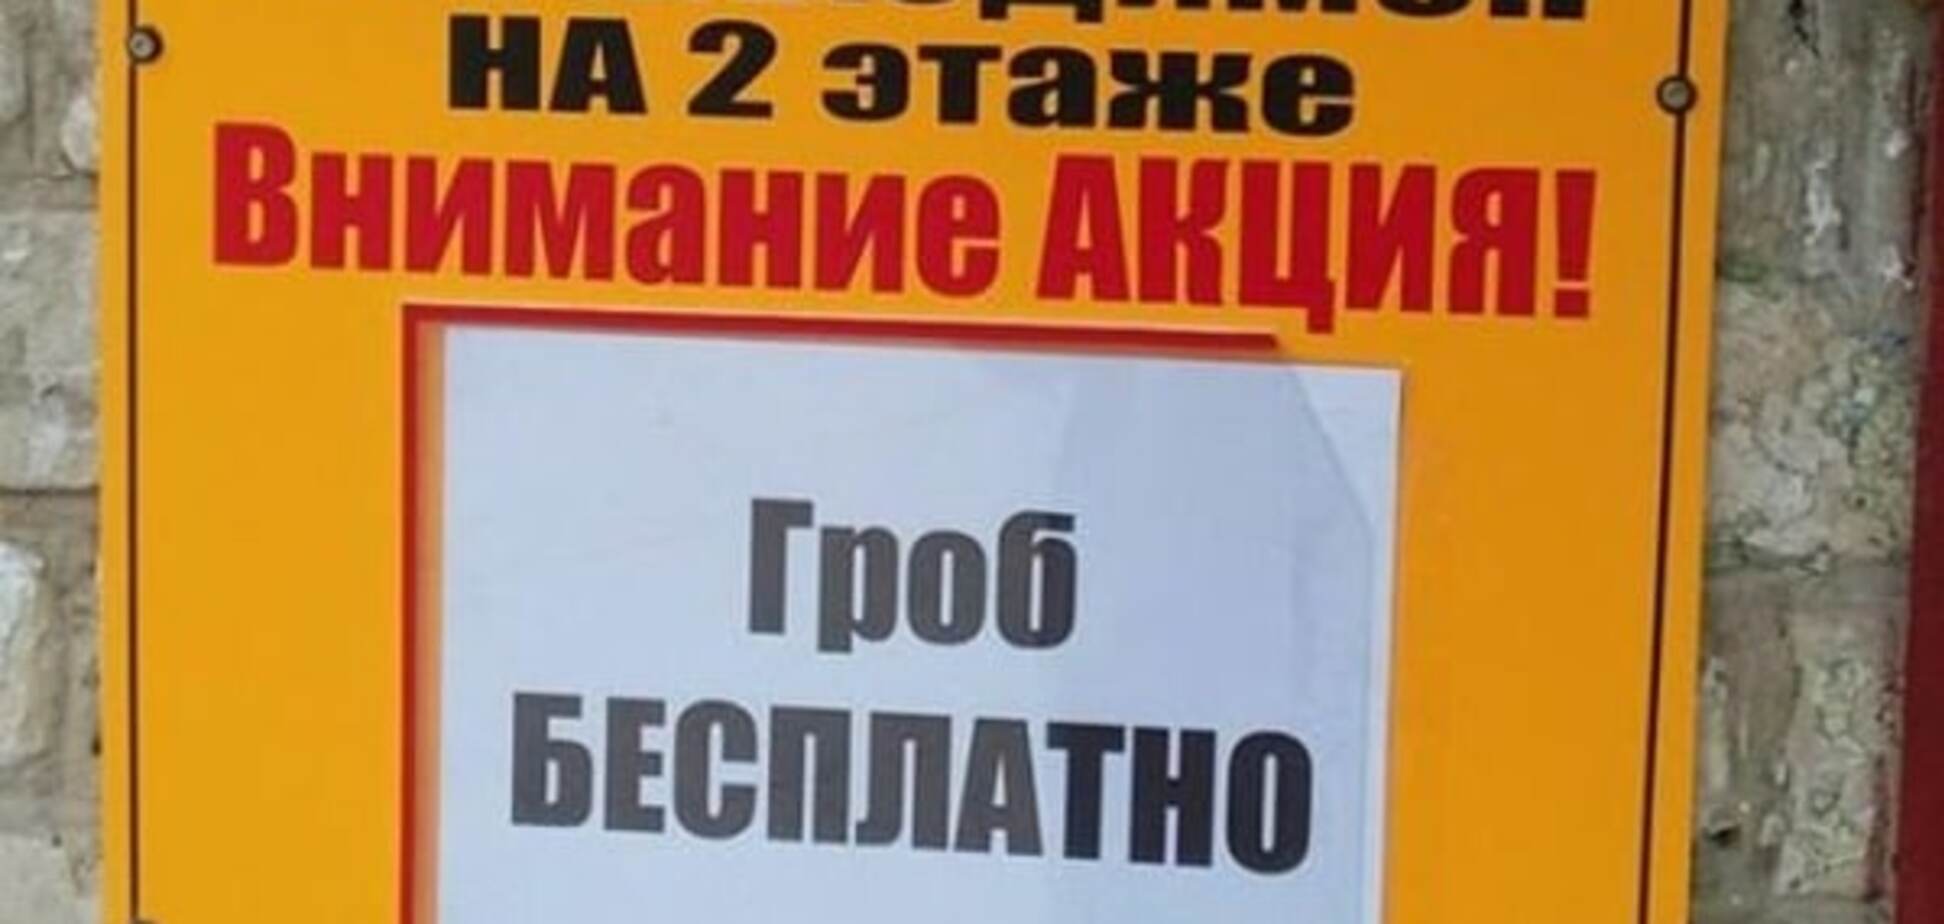 Рекламная акция в 'ЛНР': жителям Донбасса предложили бесплатные гробы